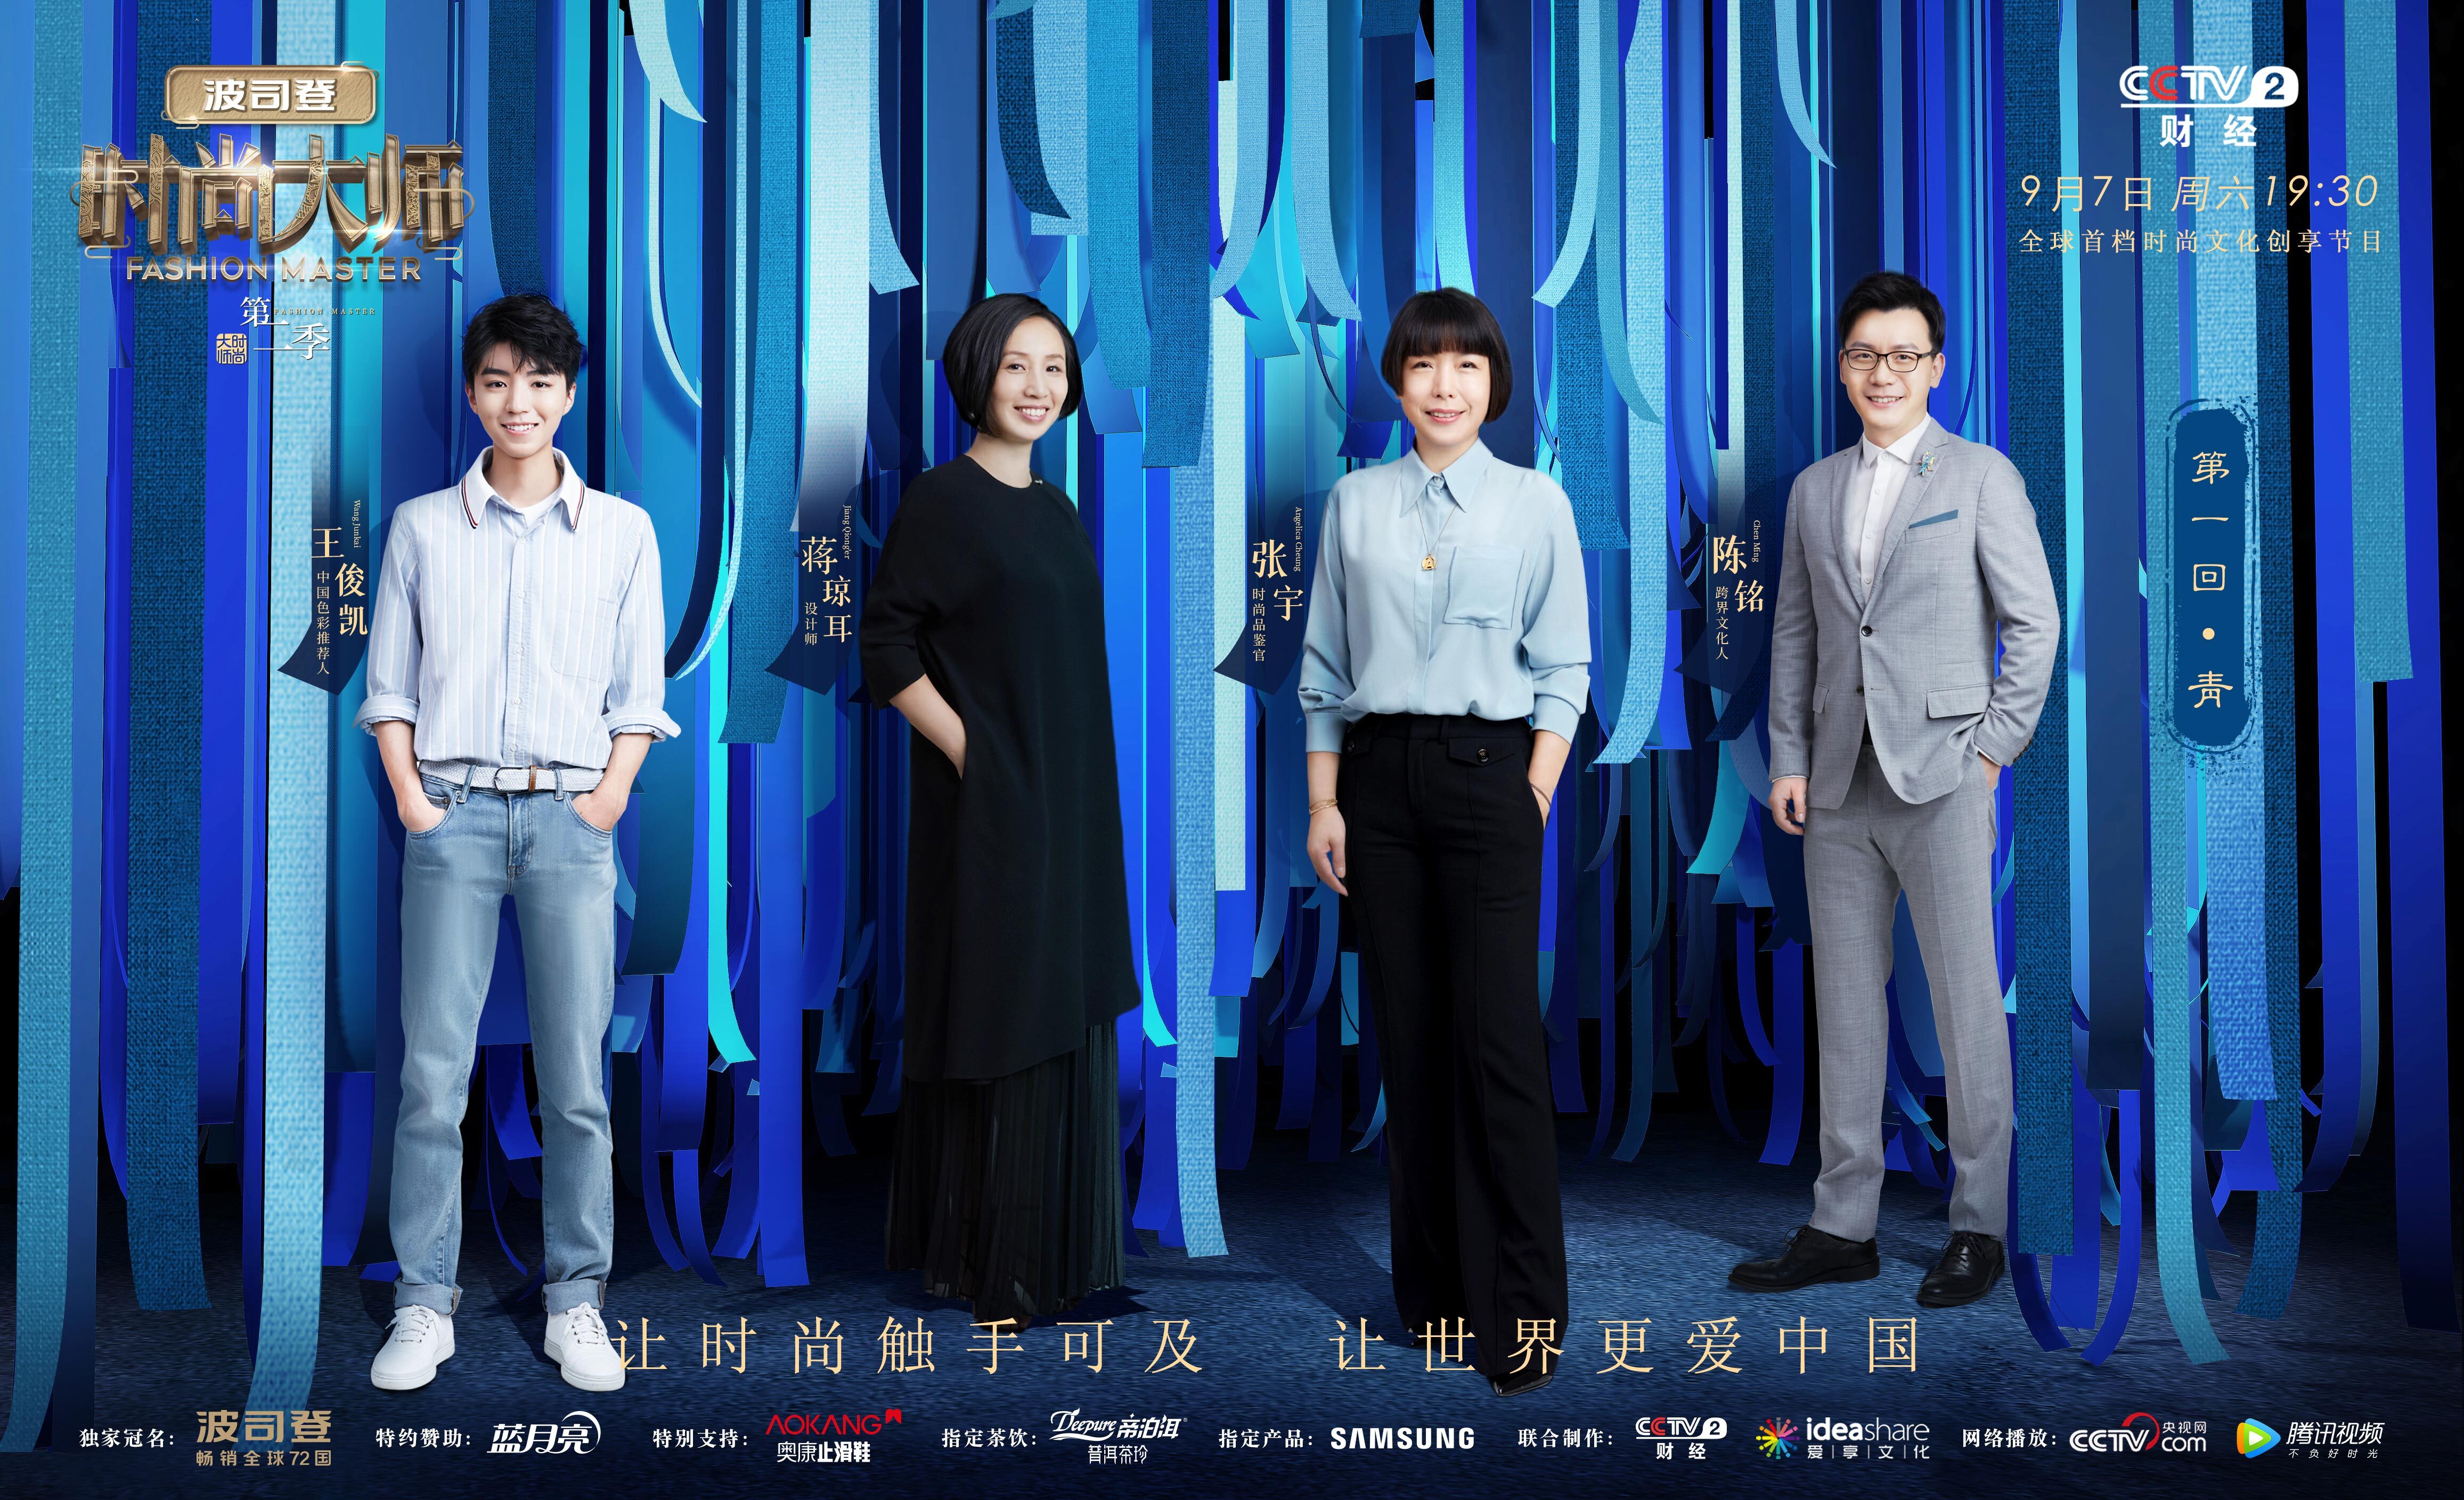 《时尚大师》第二季定档9月7日 开启中国色彩潮流盛宴